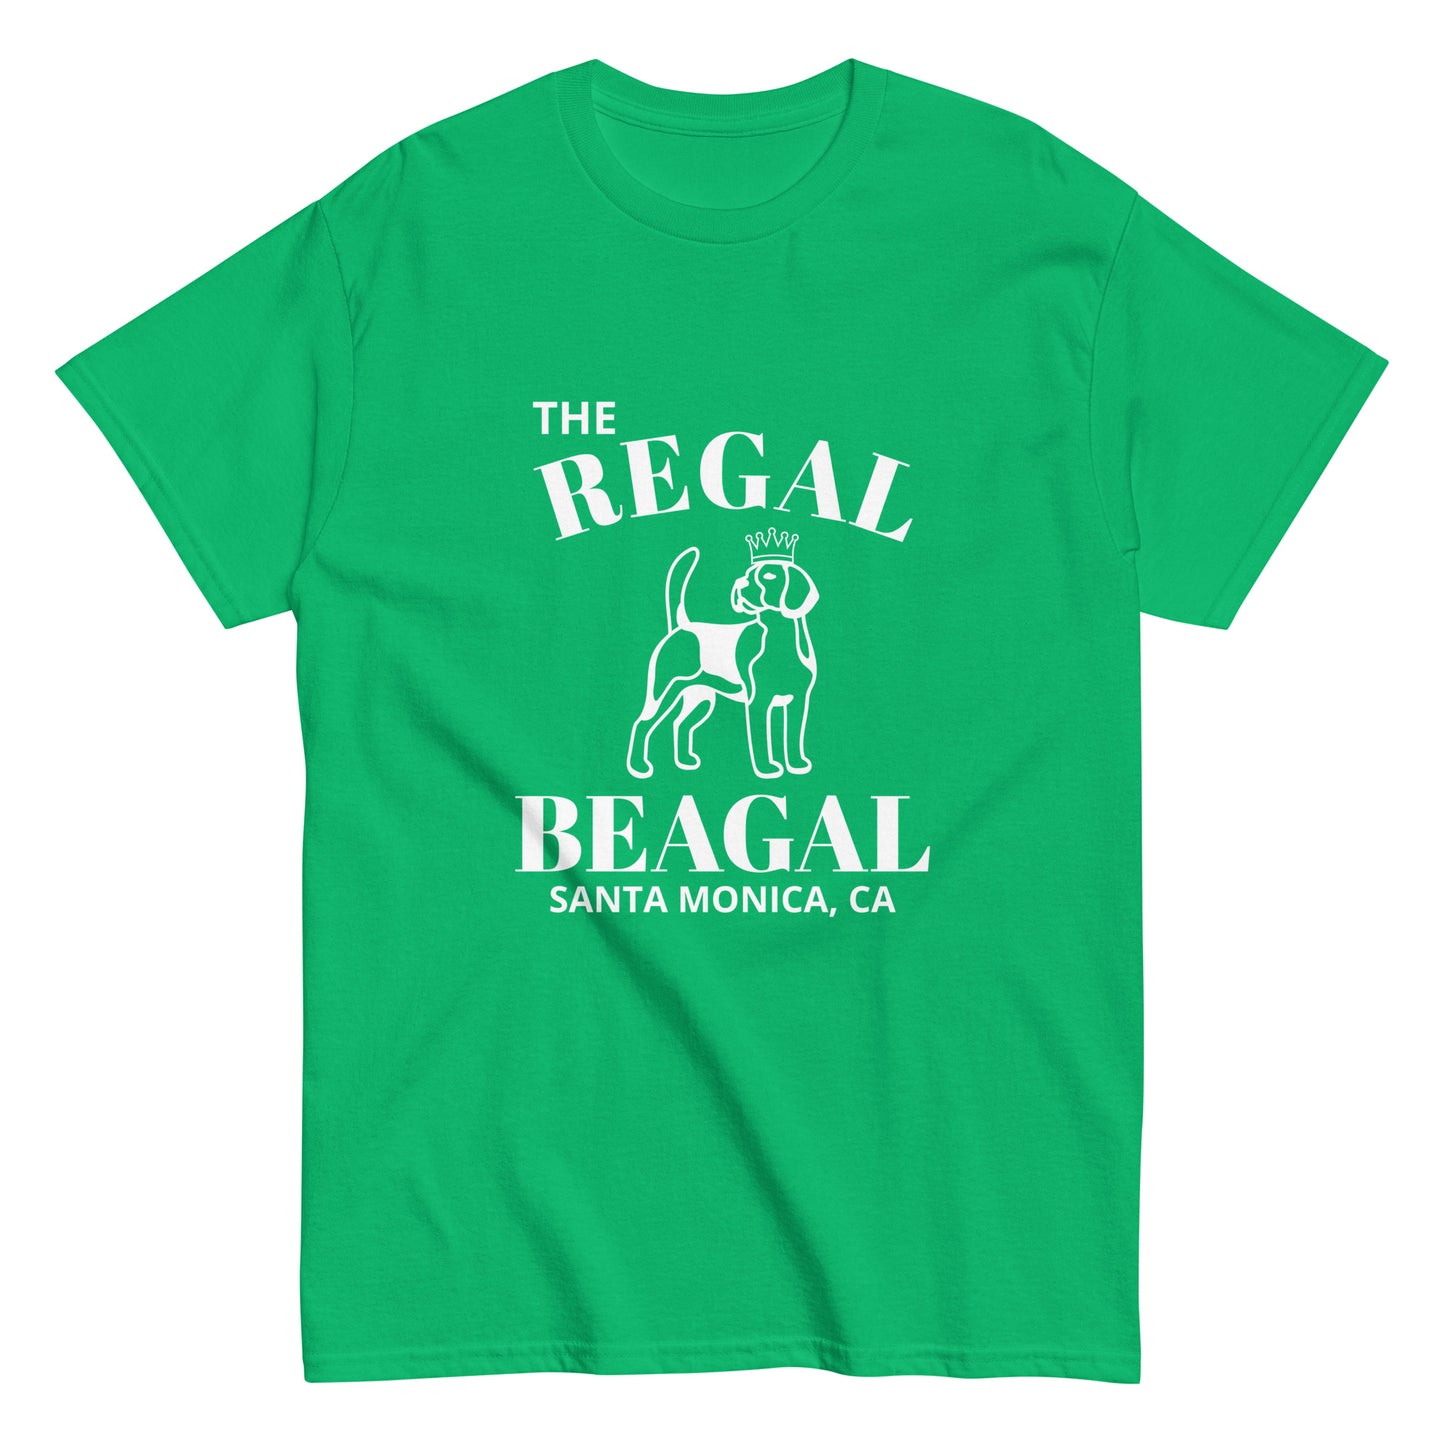 THE REGAL BEAGAL